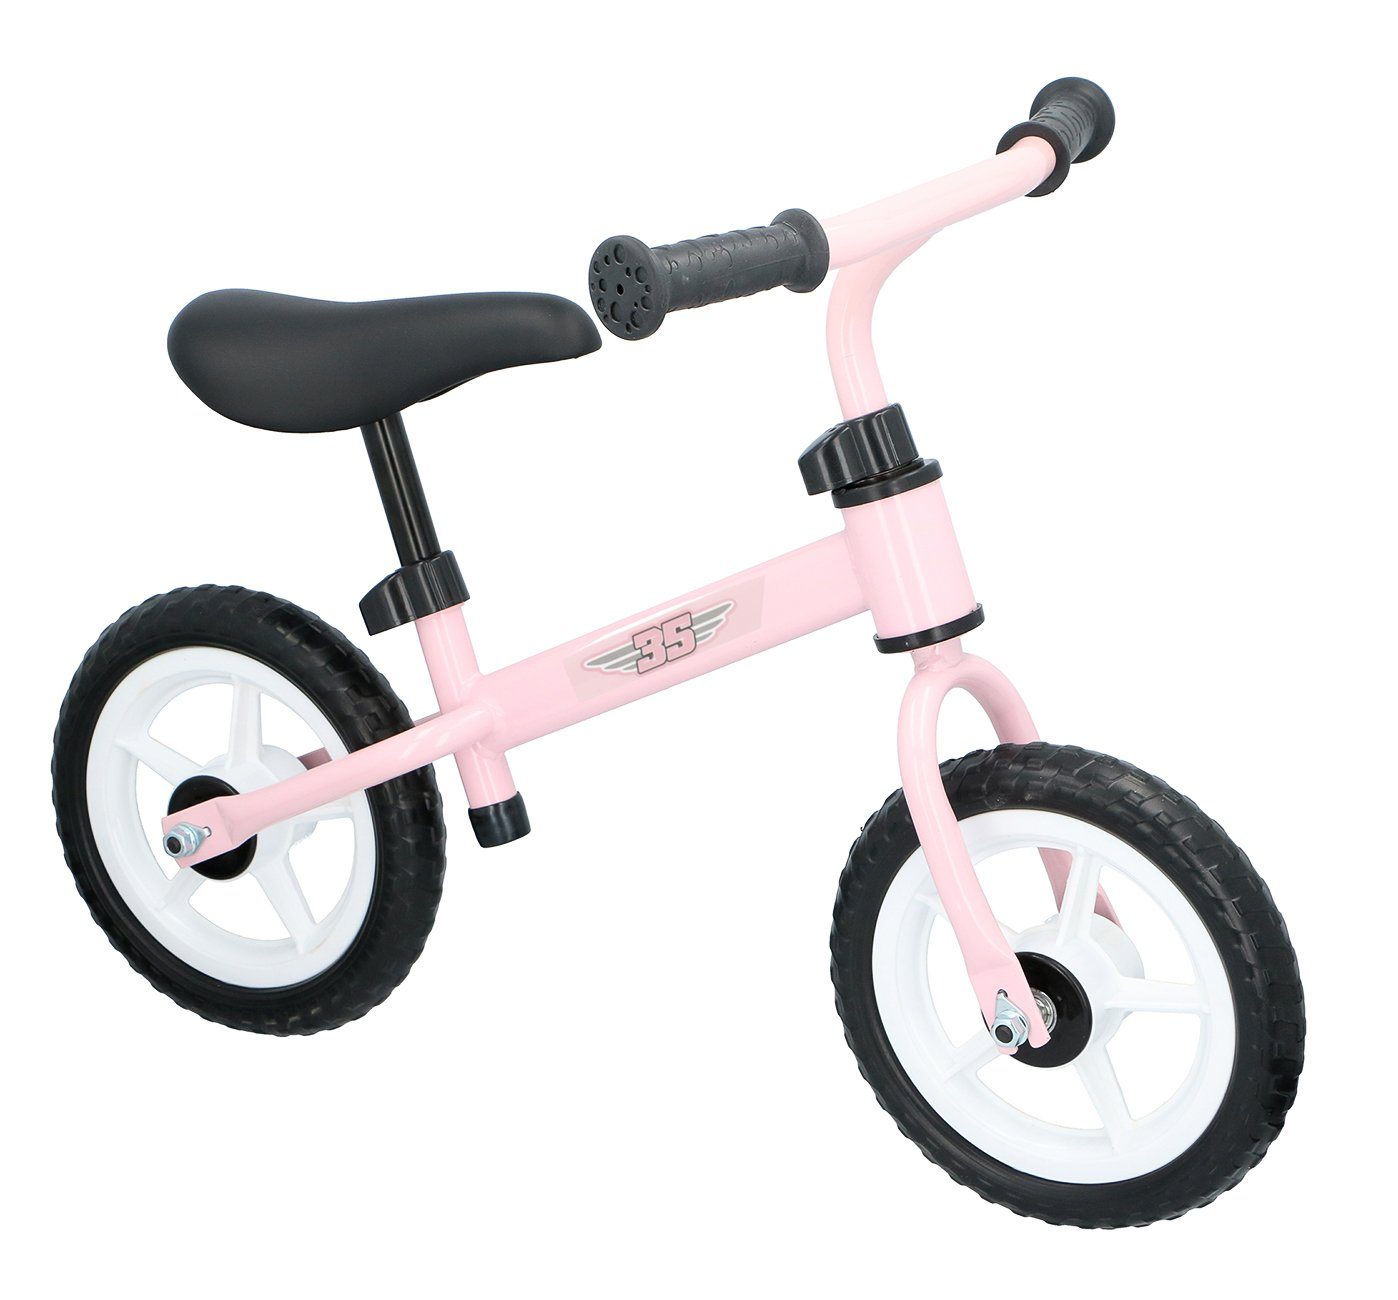 höhenverstellbarer Rahmen, mit Handgriffen Kinder Laufrad ergonomischer Leichtmetall Laufrad Lenker rutschfesten 2 Sattel, Kinder Bubble-Store Lernlaufrad, ab Rosa Jahre,